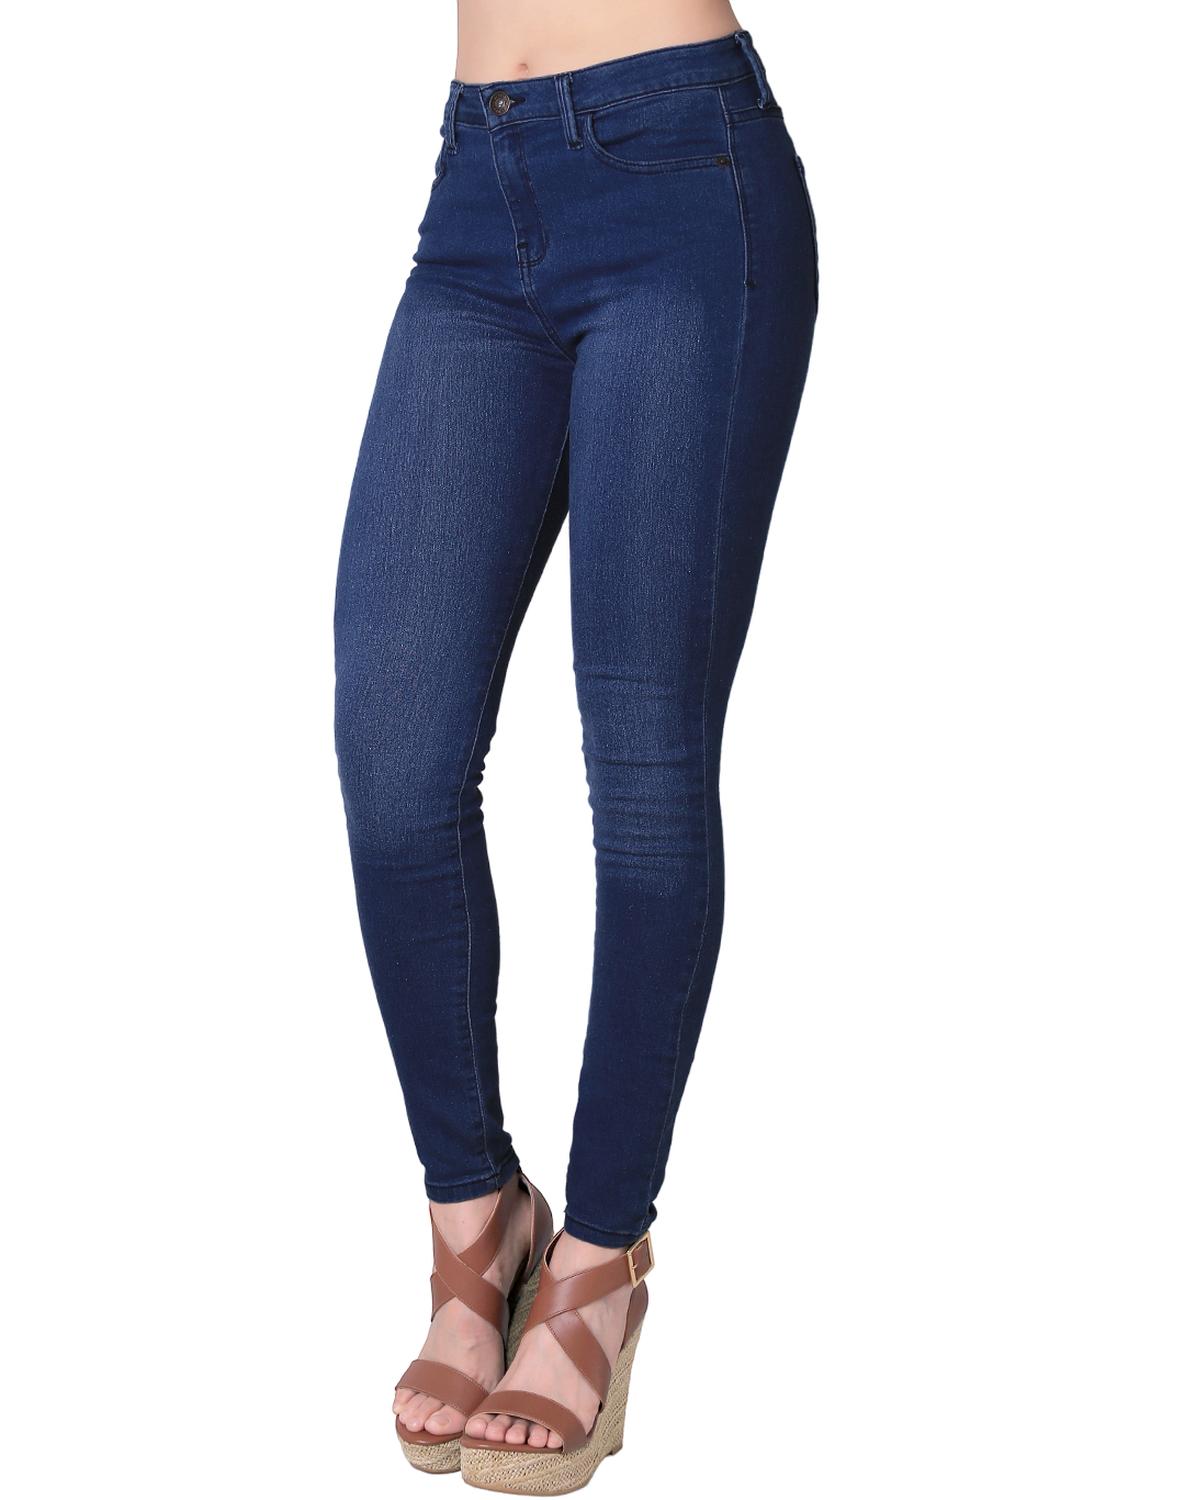 Jeans Básico Mujer Stfashion Stone 51003616 Mezclilla Stretch